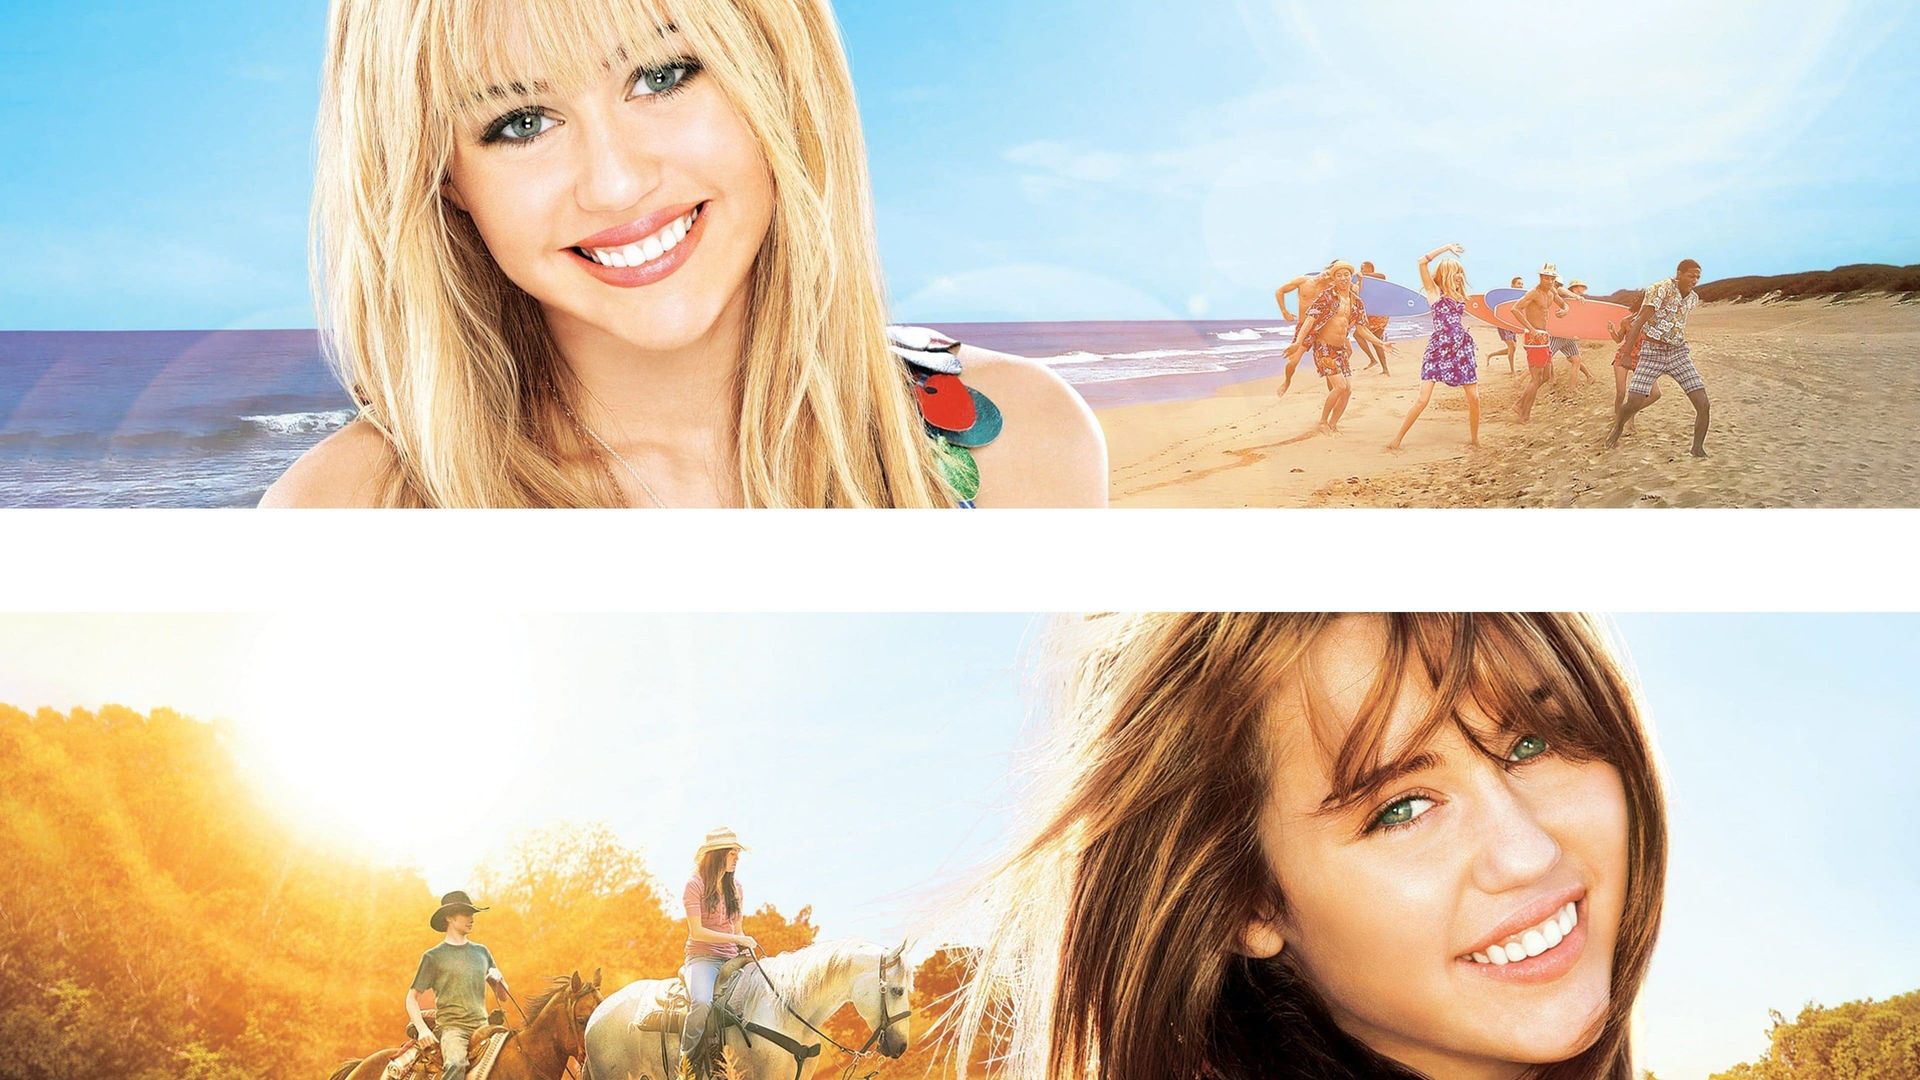 Hannah Montana: The Movie Backdrop